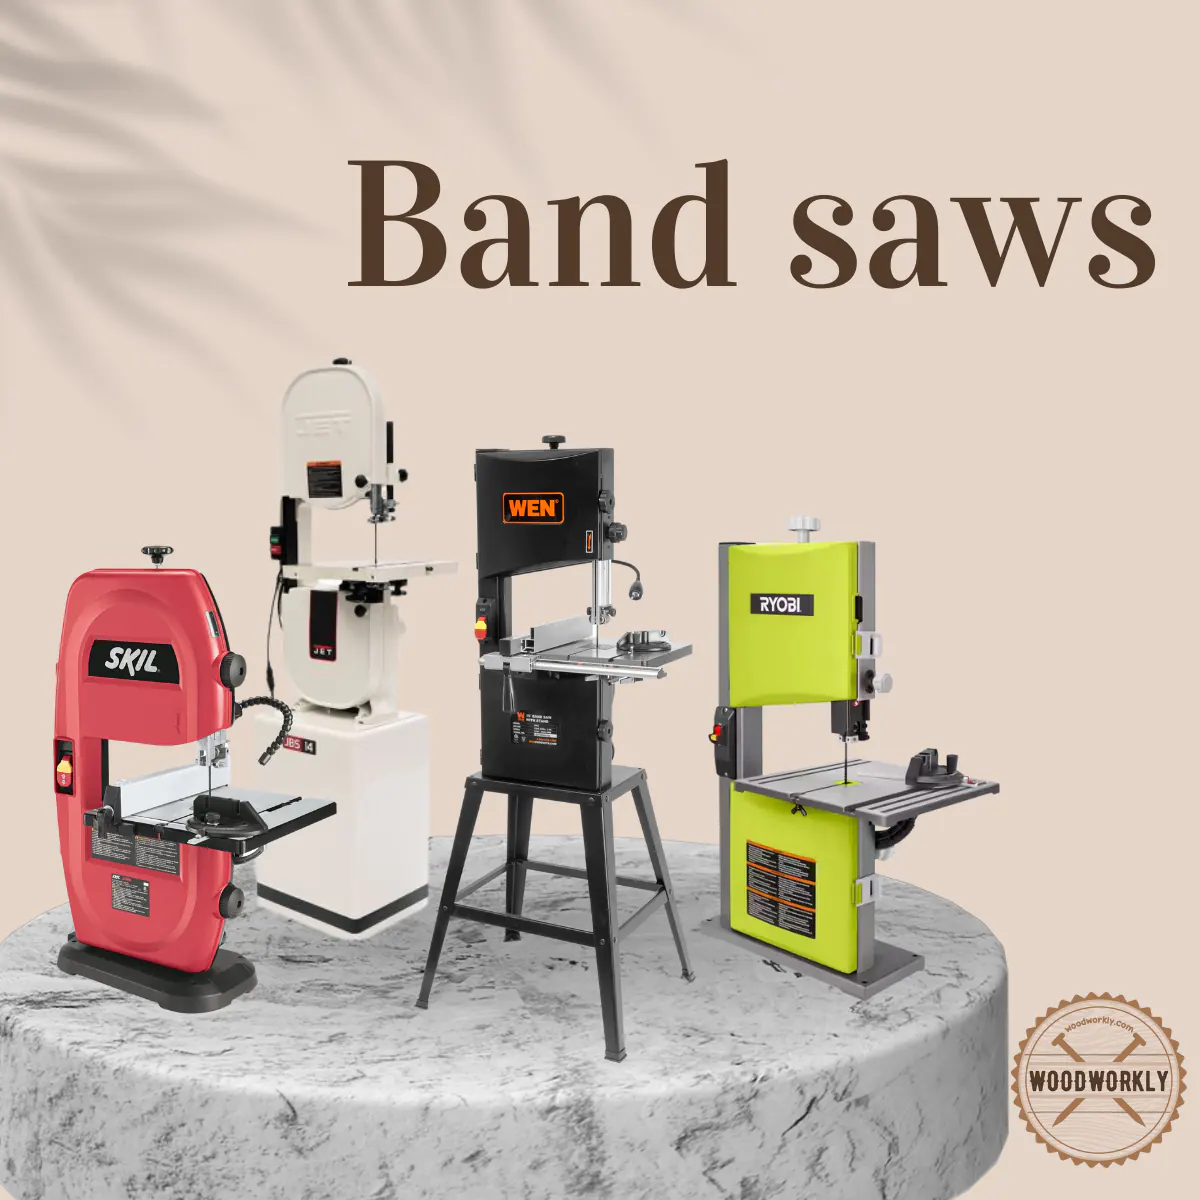 Band saws